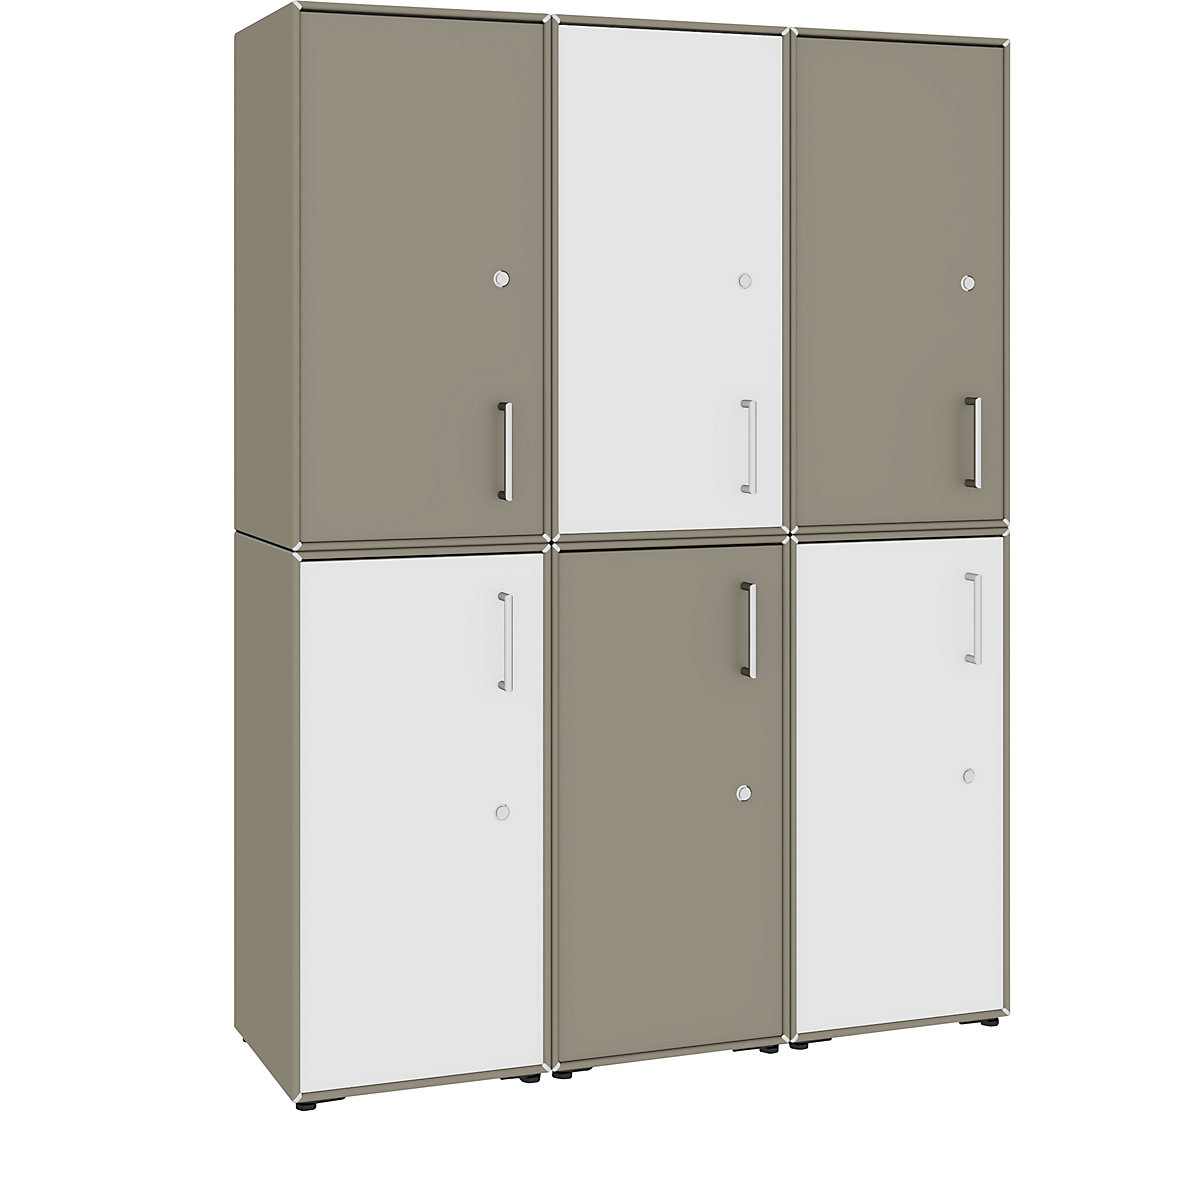 Combinación de puertas batientes – mauser, 6 puertas, detrás de cada una 2 compartimentos, gris beige / blanco puro-7